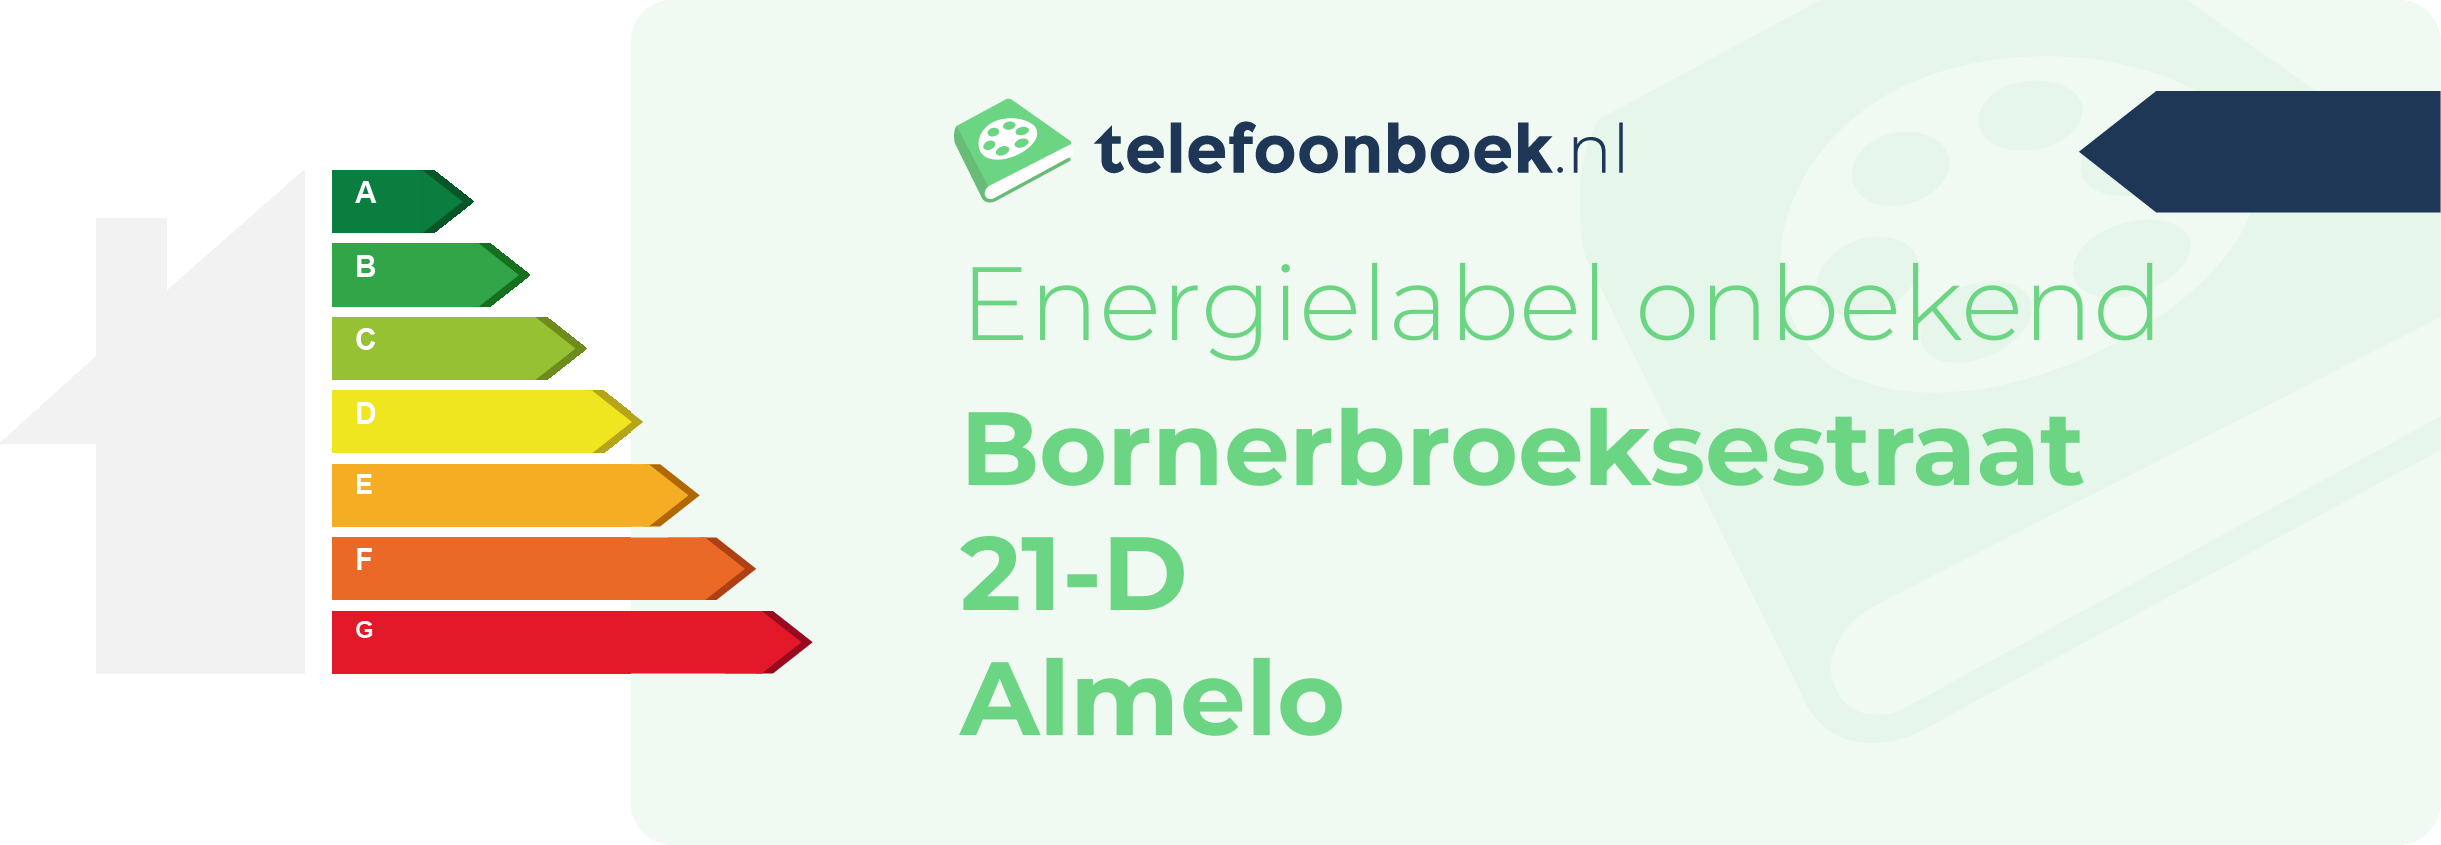 Energielabel Bornerbroeksestraat 21-D Almelo